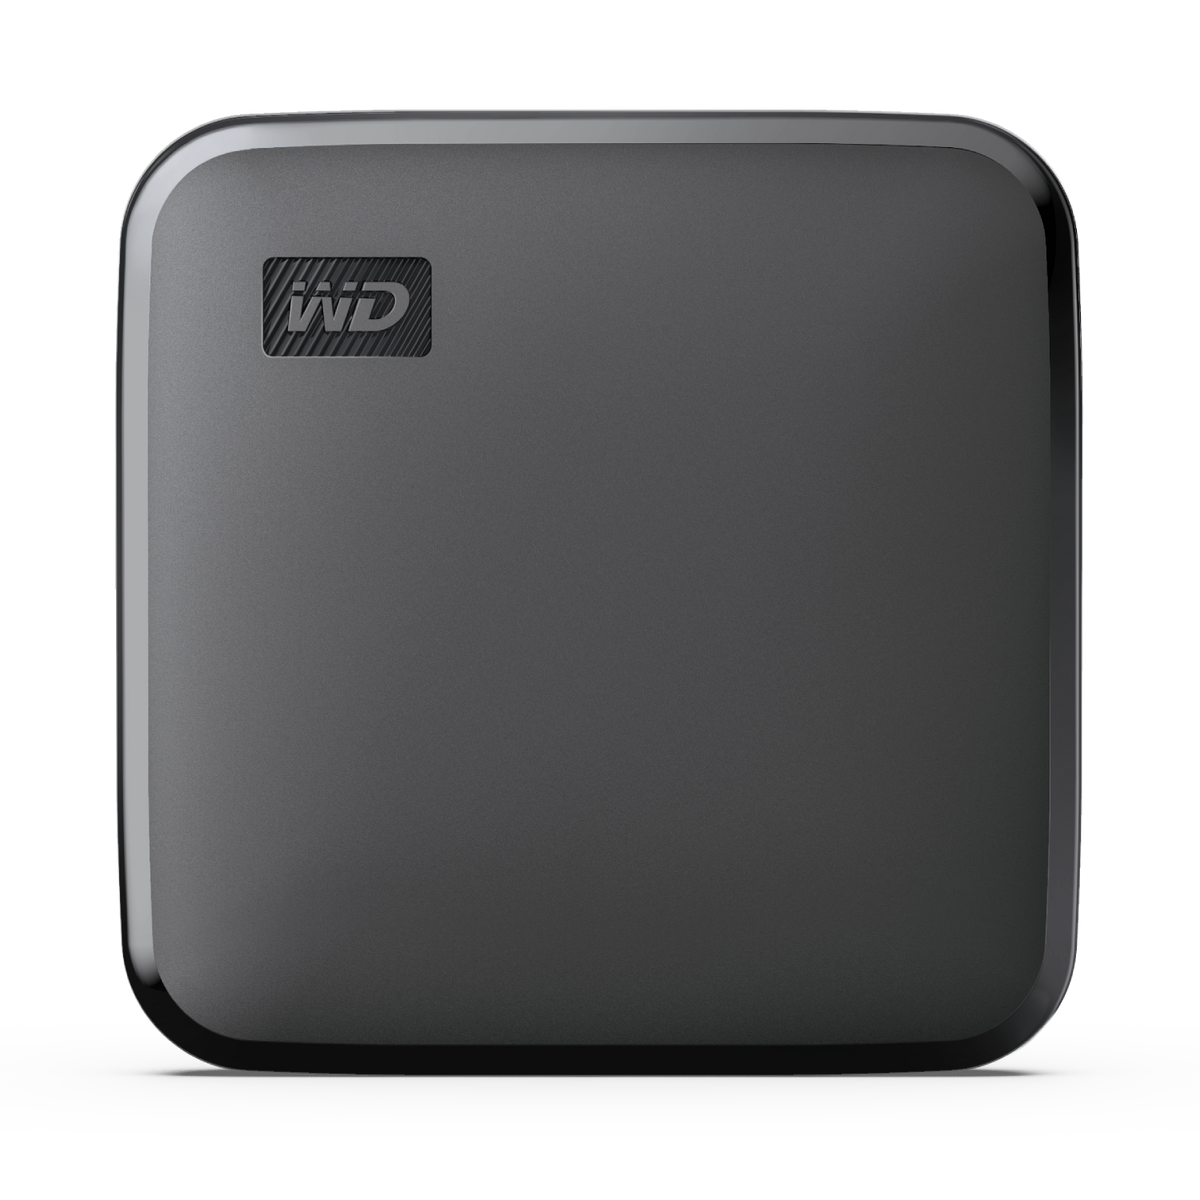 SSD, Schwarz Zoll, WESTERN SSD, 480 extern, ELEMENTS GB WDBAYN4800ABK-WESN SE DIGITAL 2,5 480GB